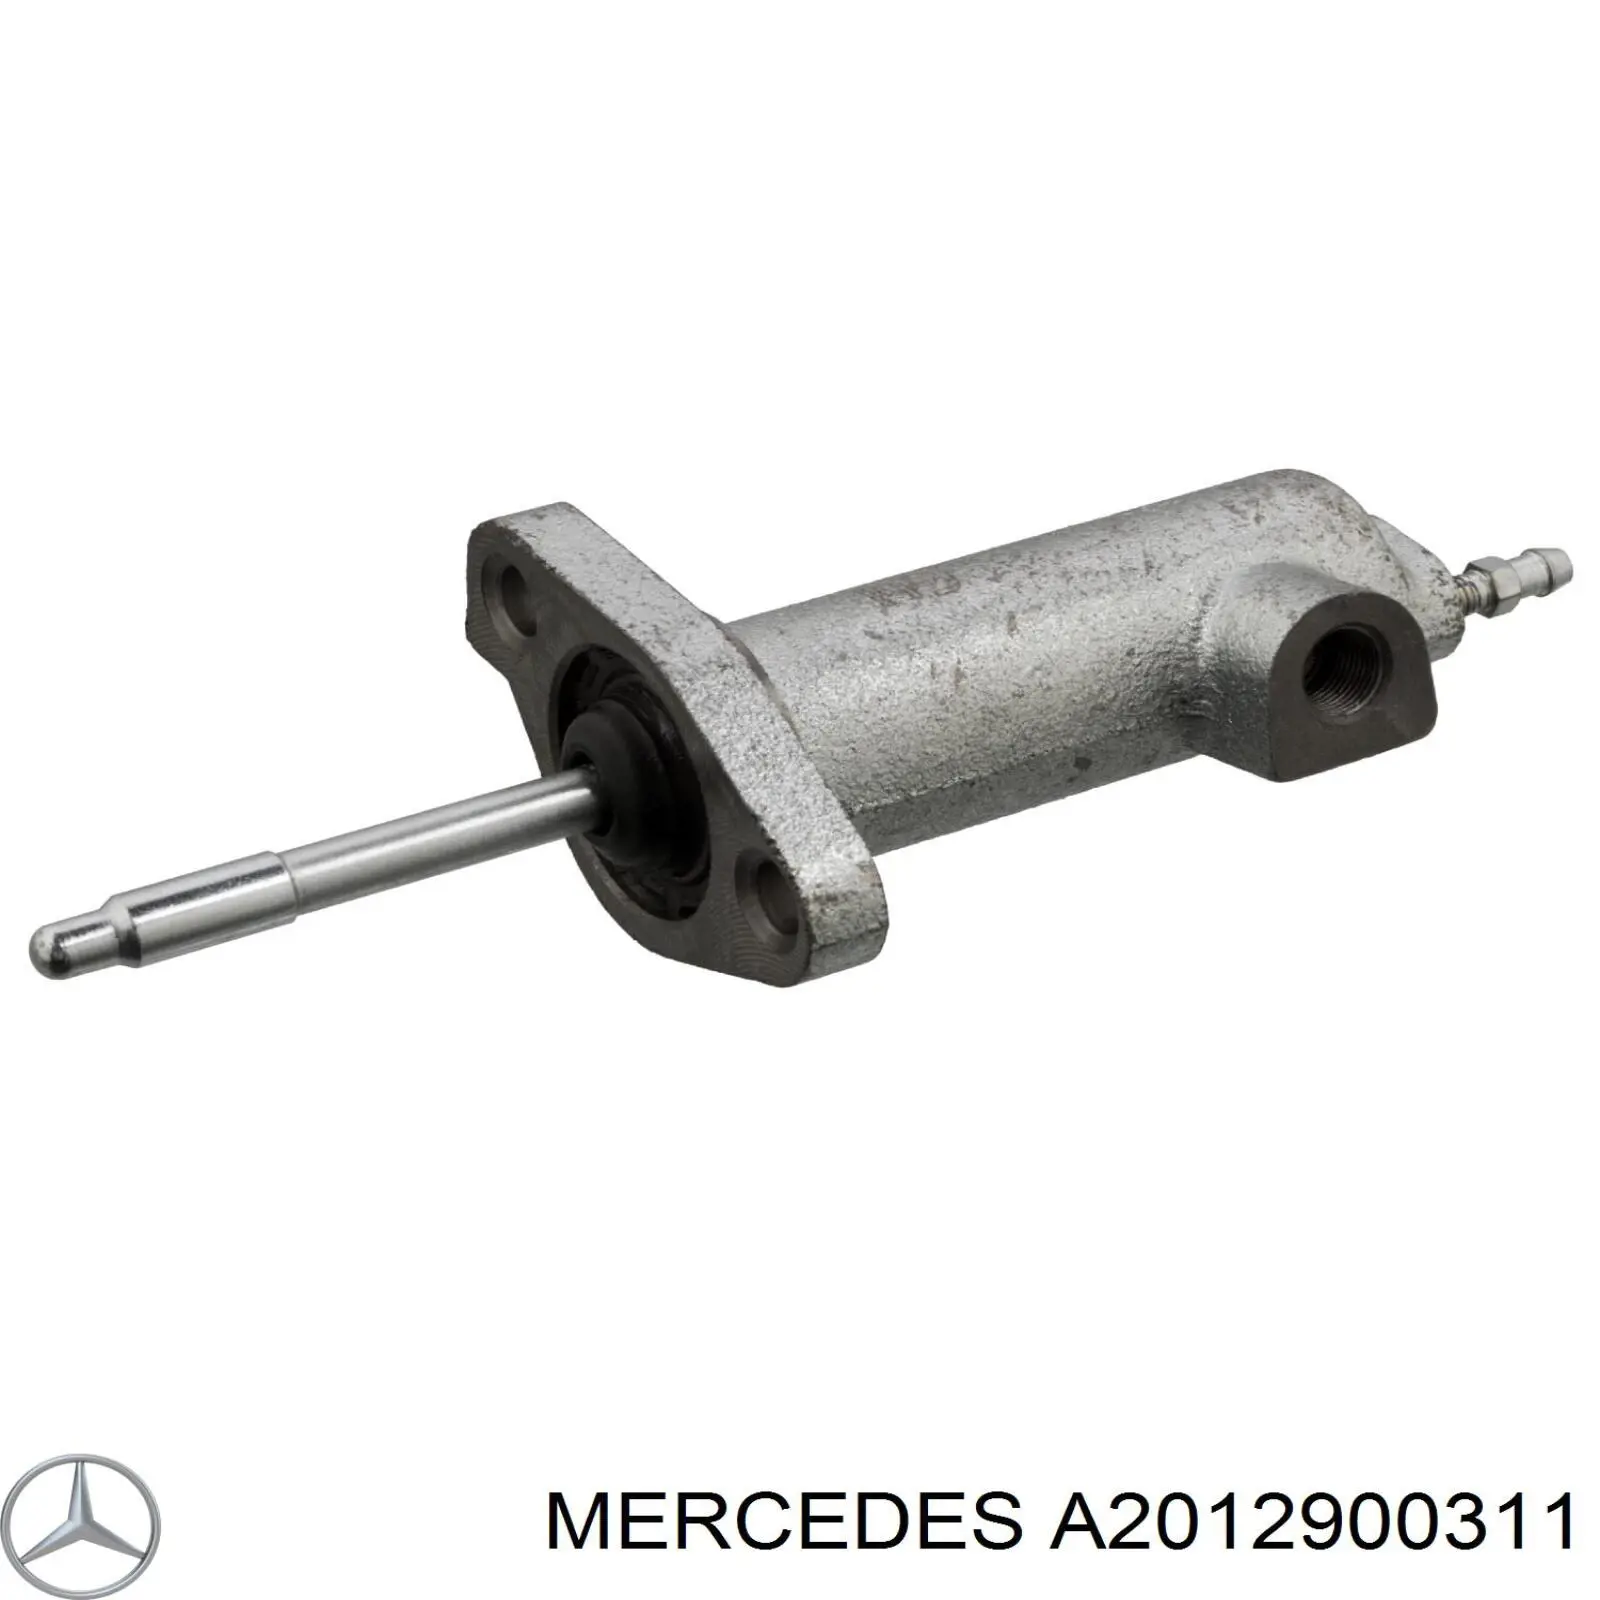 A2012900311 Mercedes цилиндр сцепления рабочий